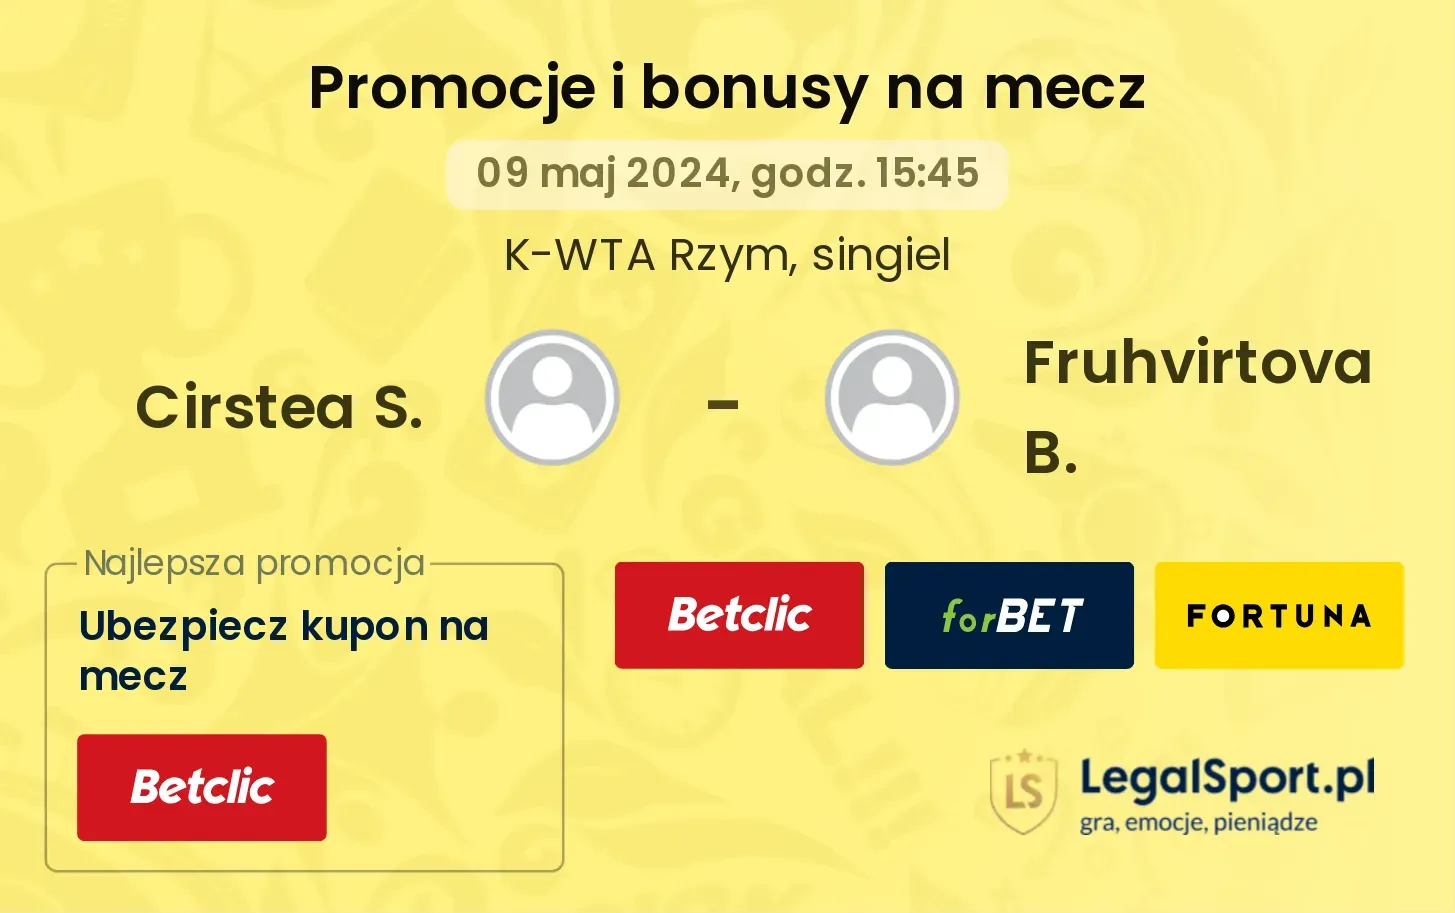 Cirstea S. - Fruhvirtova B. promocje bonusy na mecz